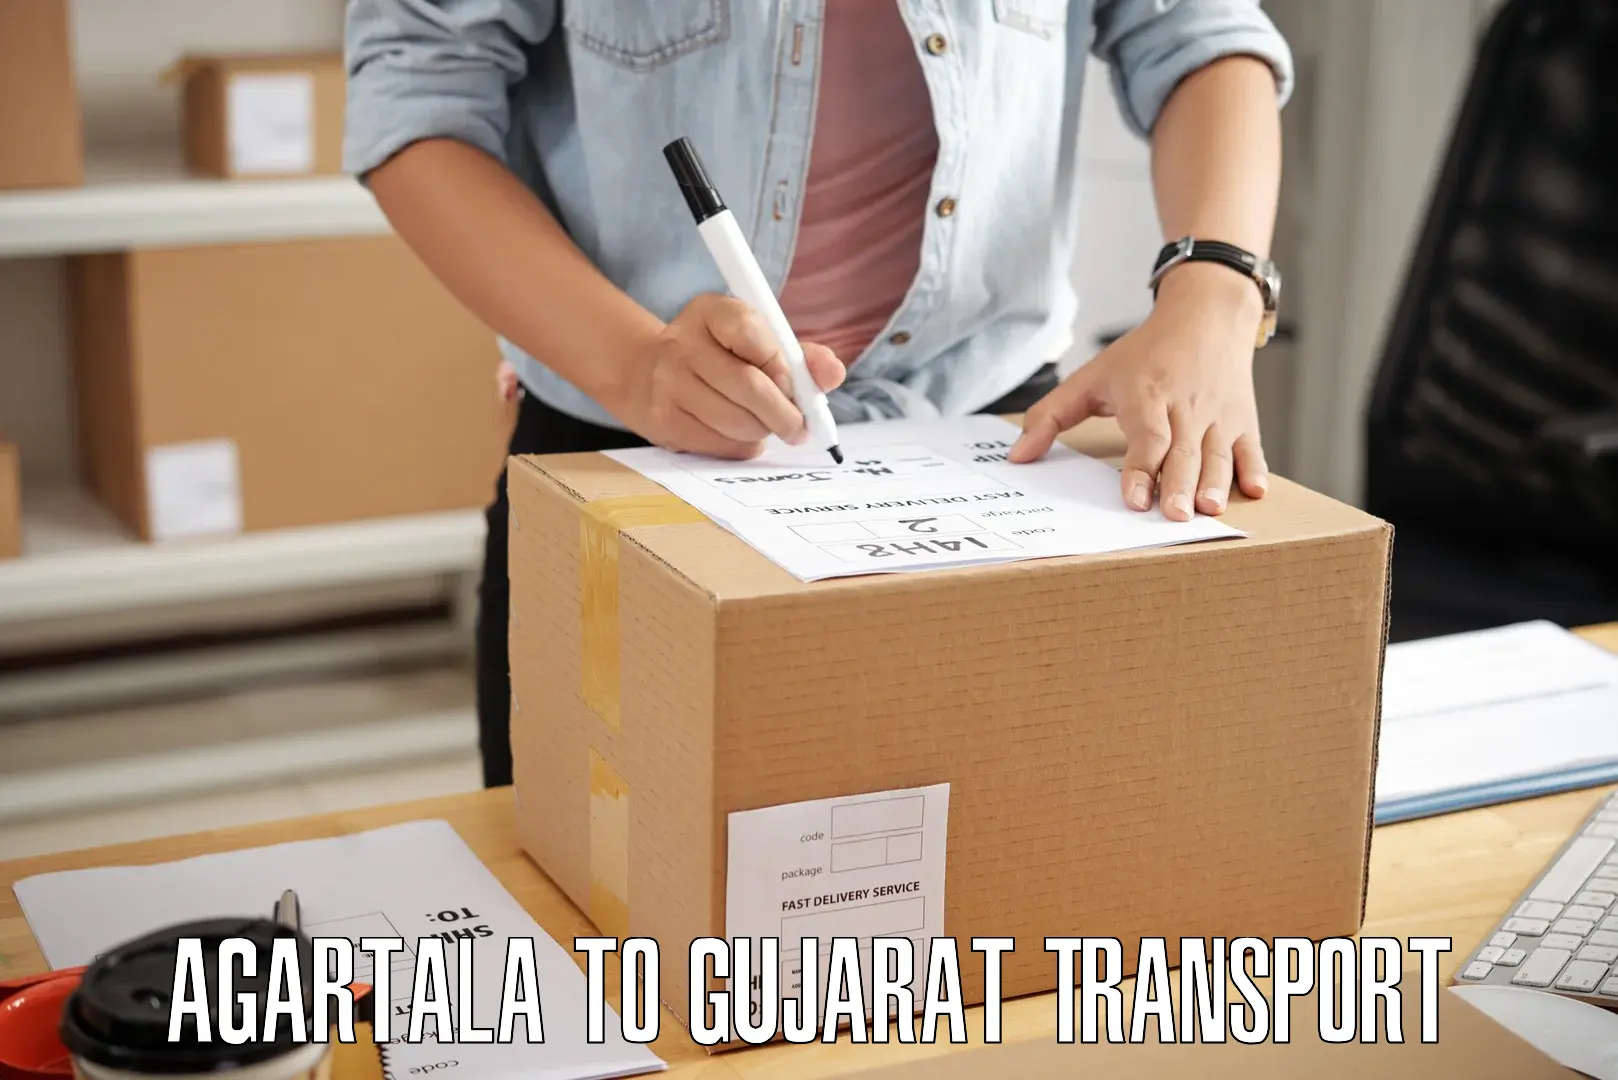 Delivery service Agartala to Gujarat